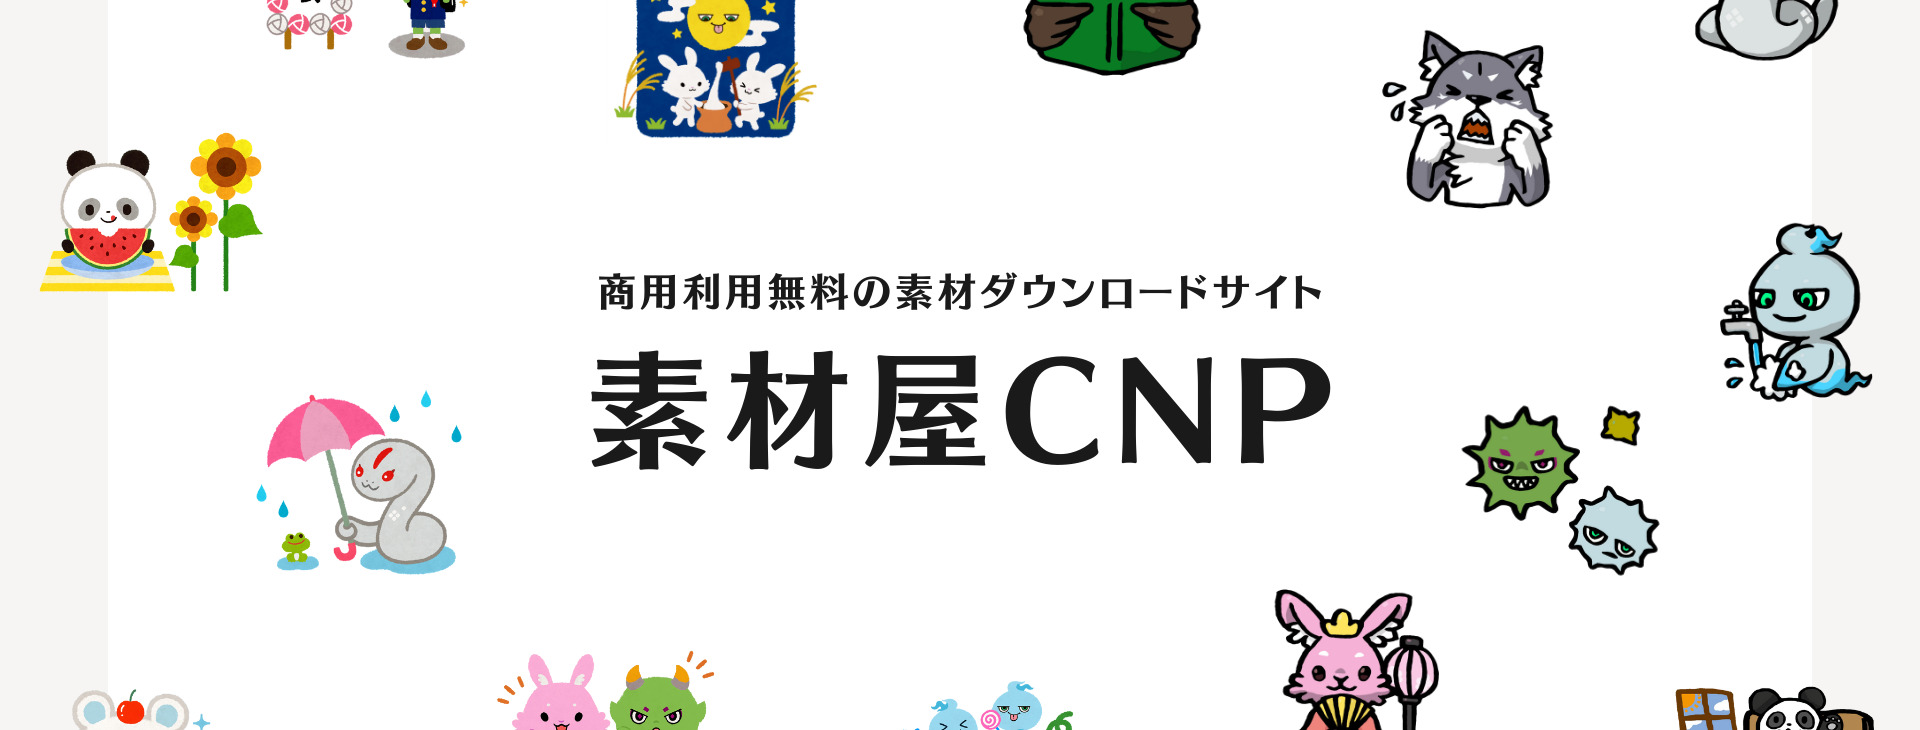 素材屋CNPの公式サイトのトップ画面